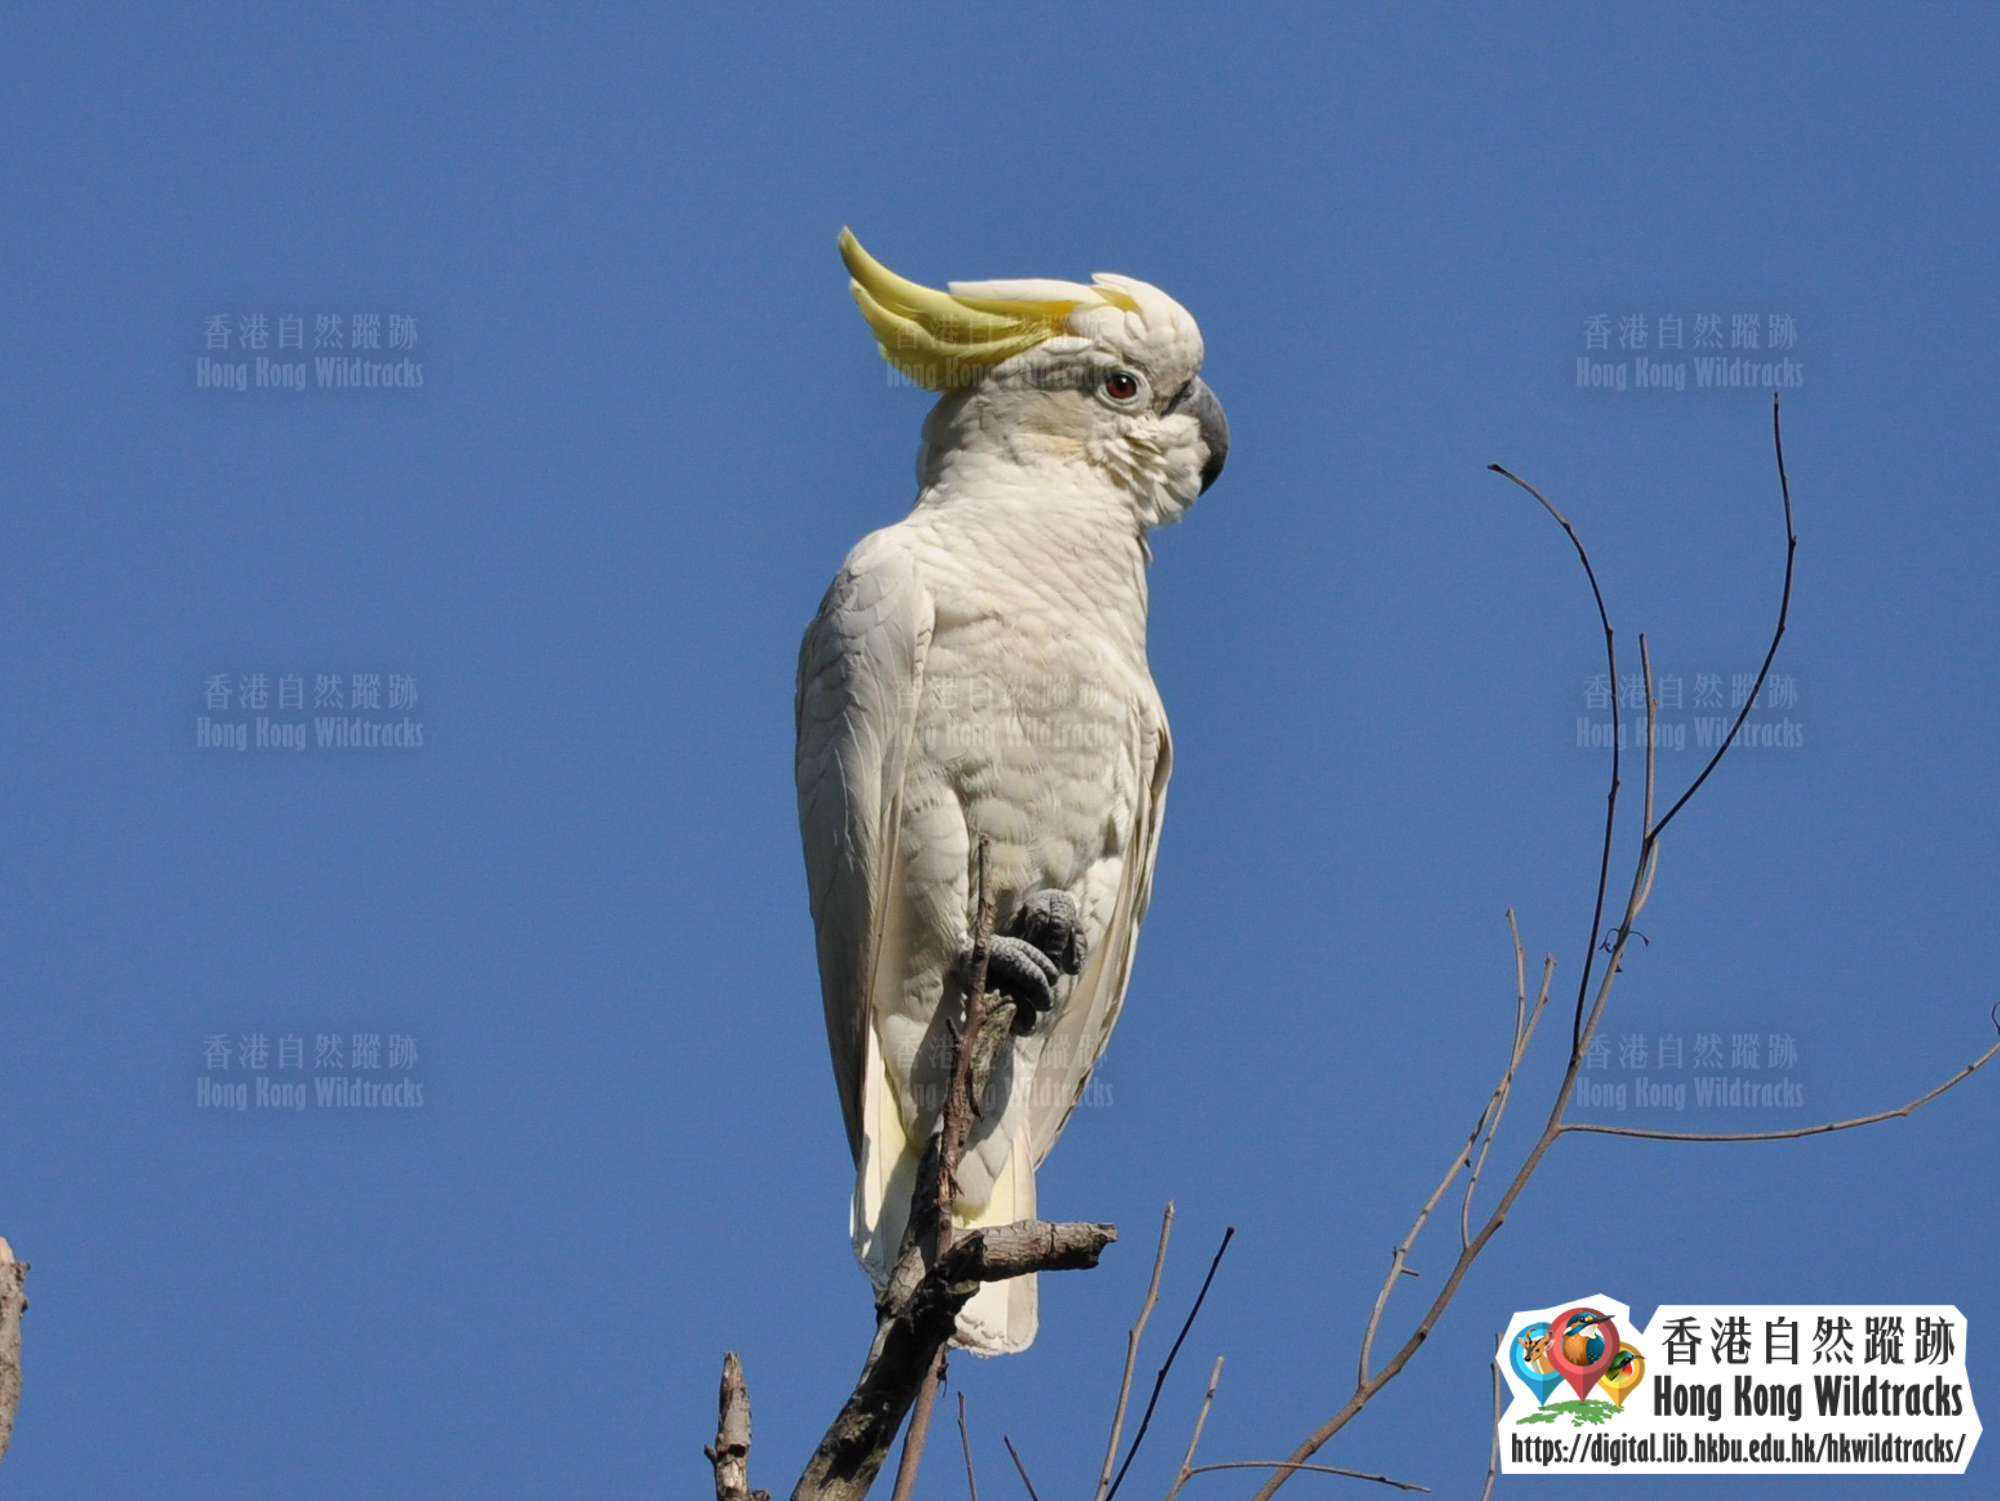 小葵花鳳頭鸚鵡 Yellow-crested Cockatoo